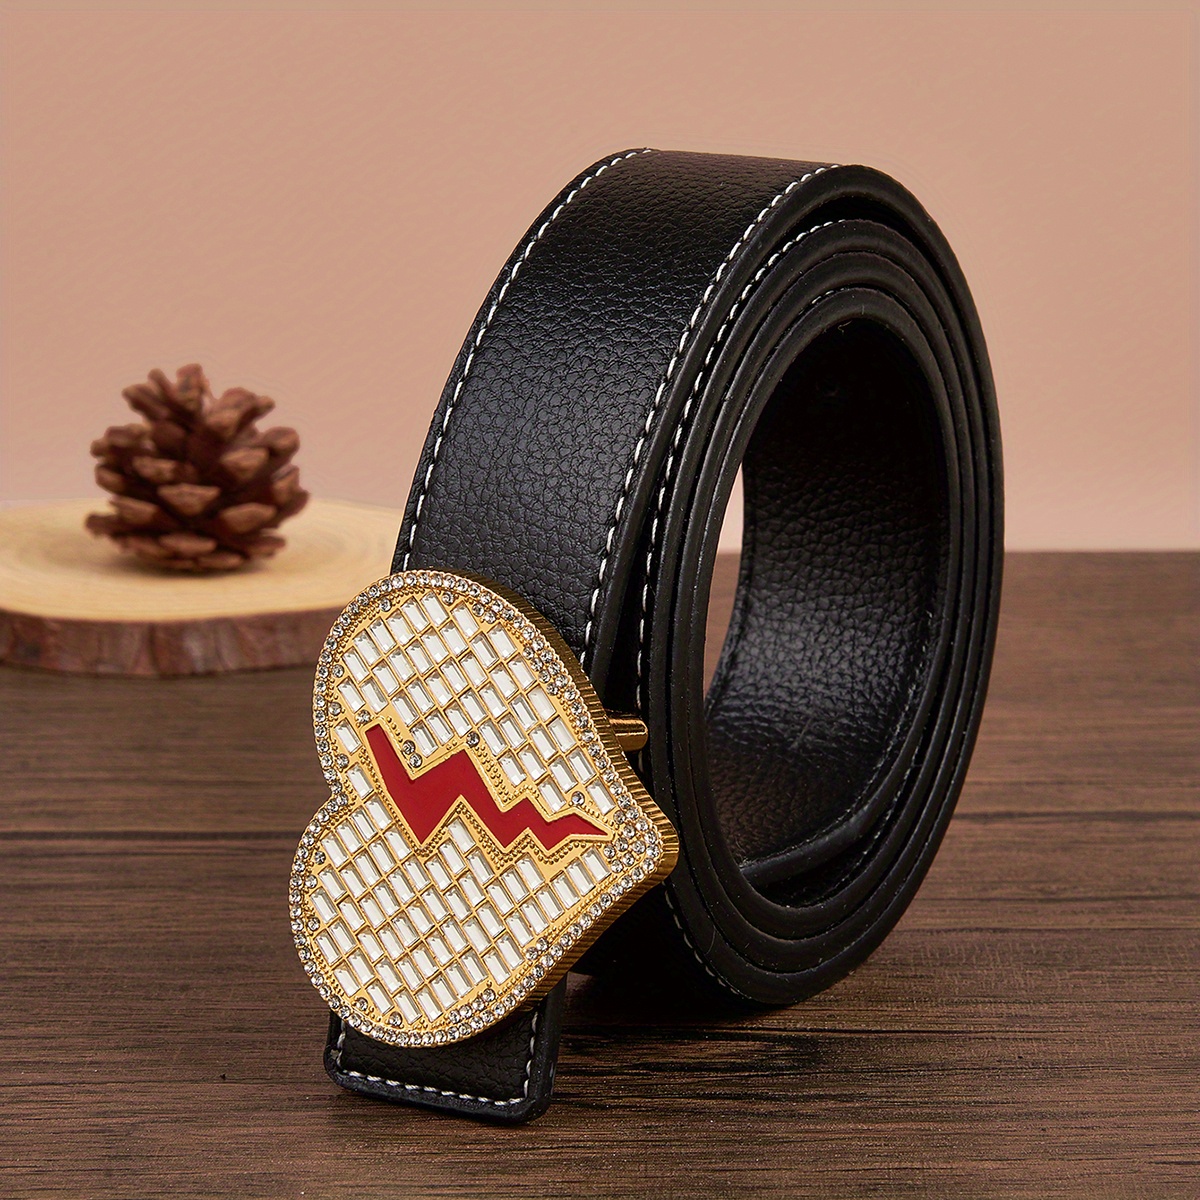 Hip Hop Style Rock Decorative Belt, Heart Buckle Men's Pants Belts